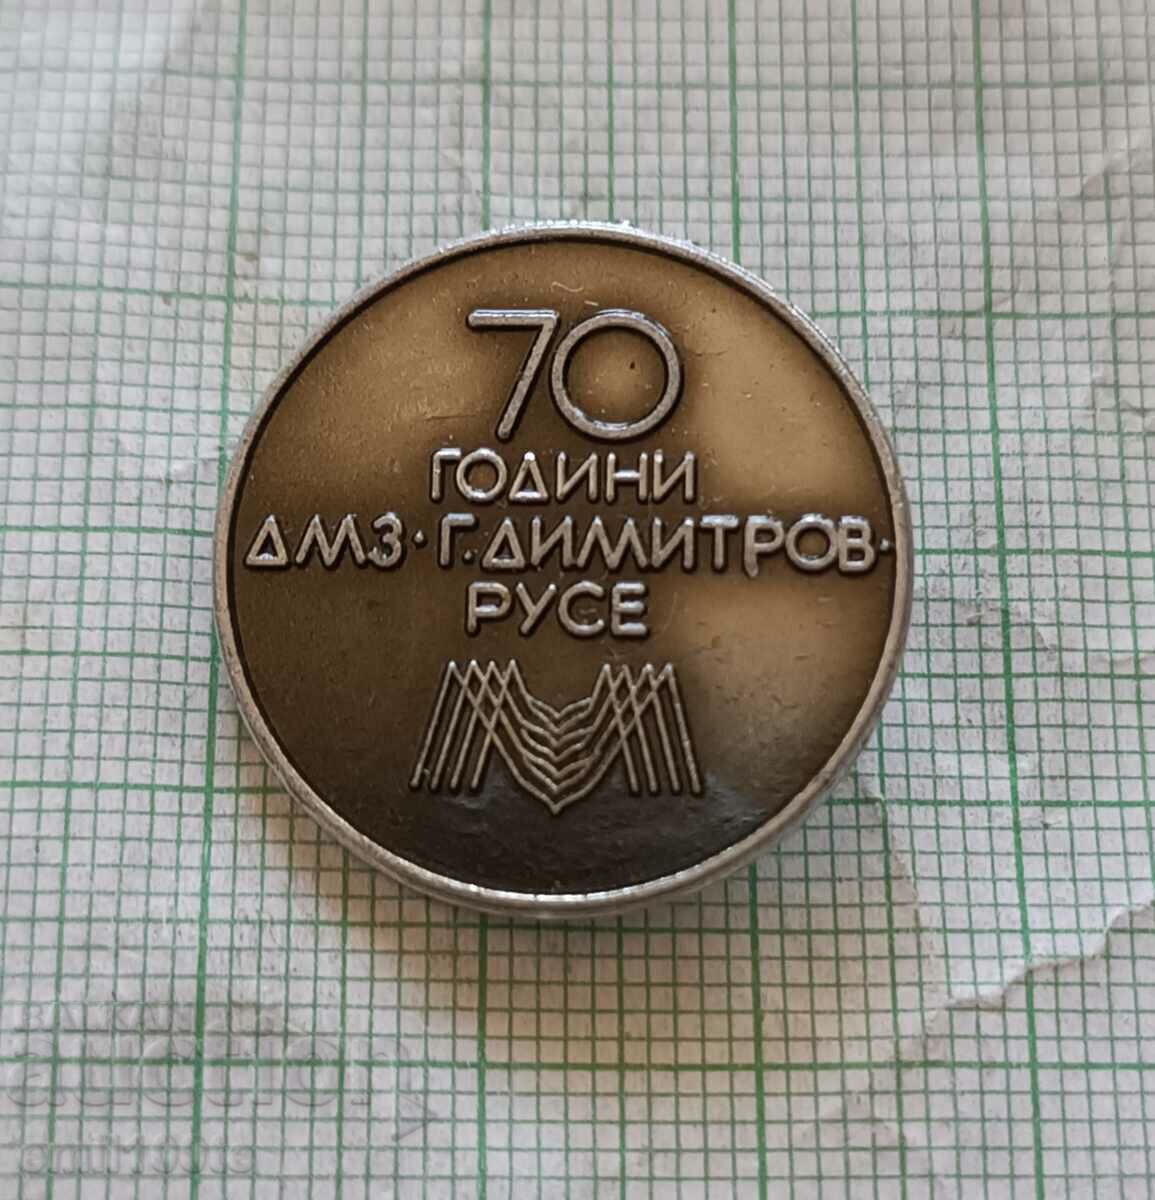 Insigna - 70 de ani DMZ Georgi Dimitrov Ruse